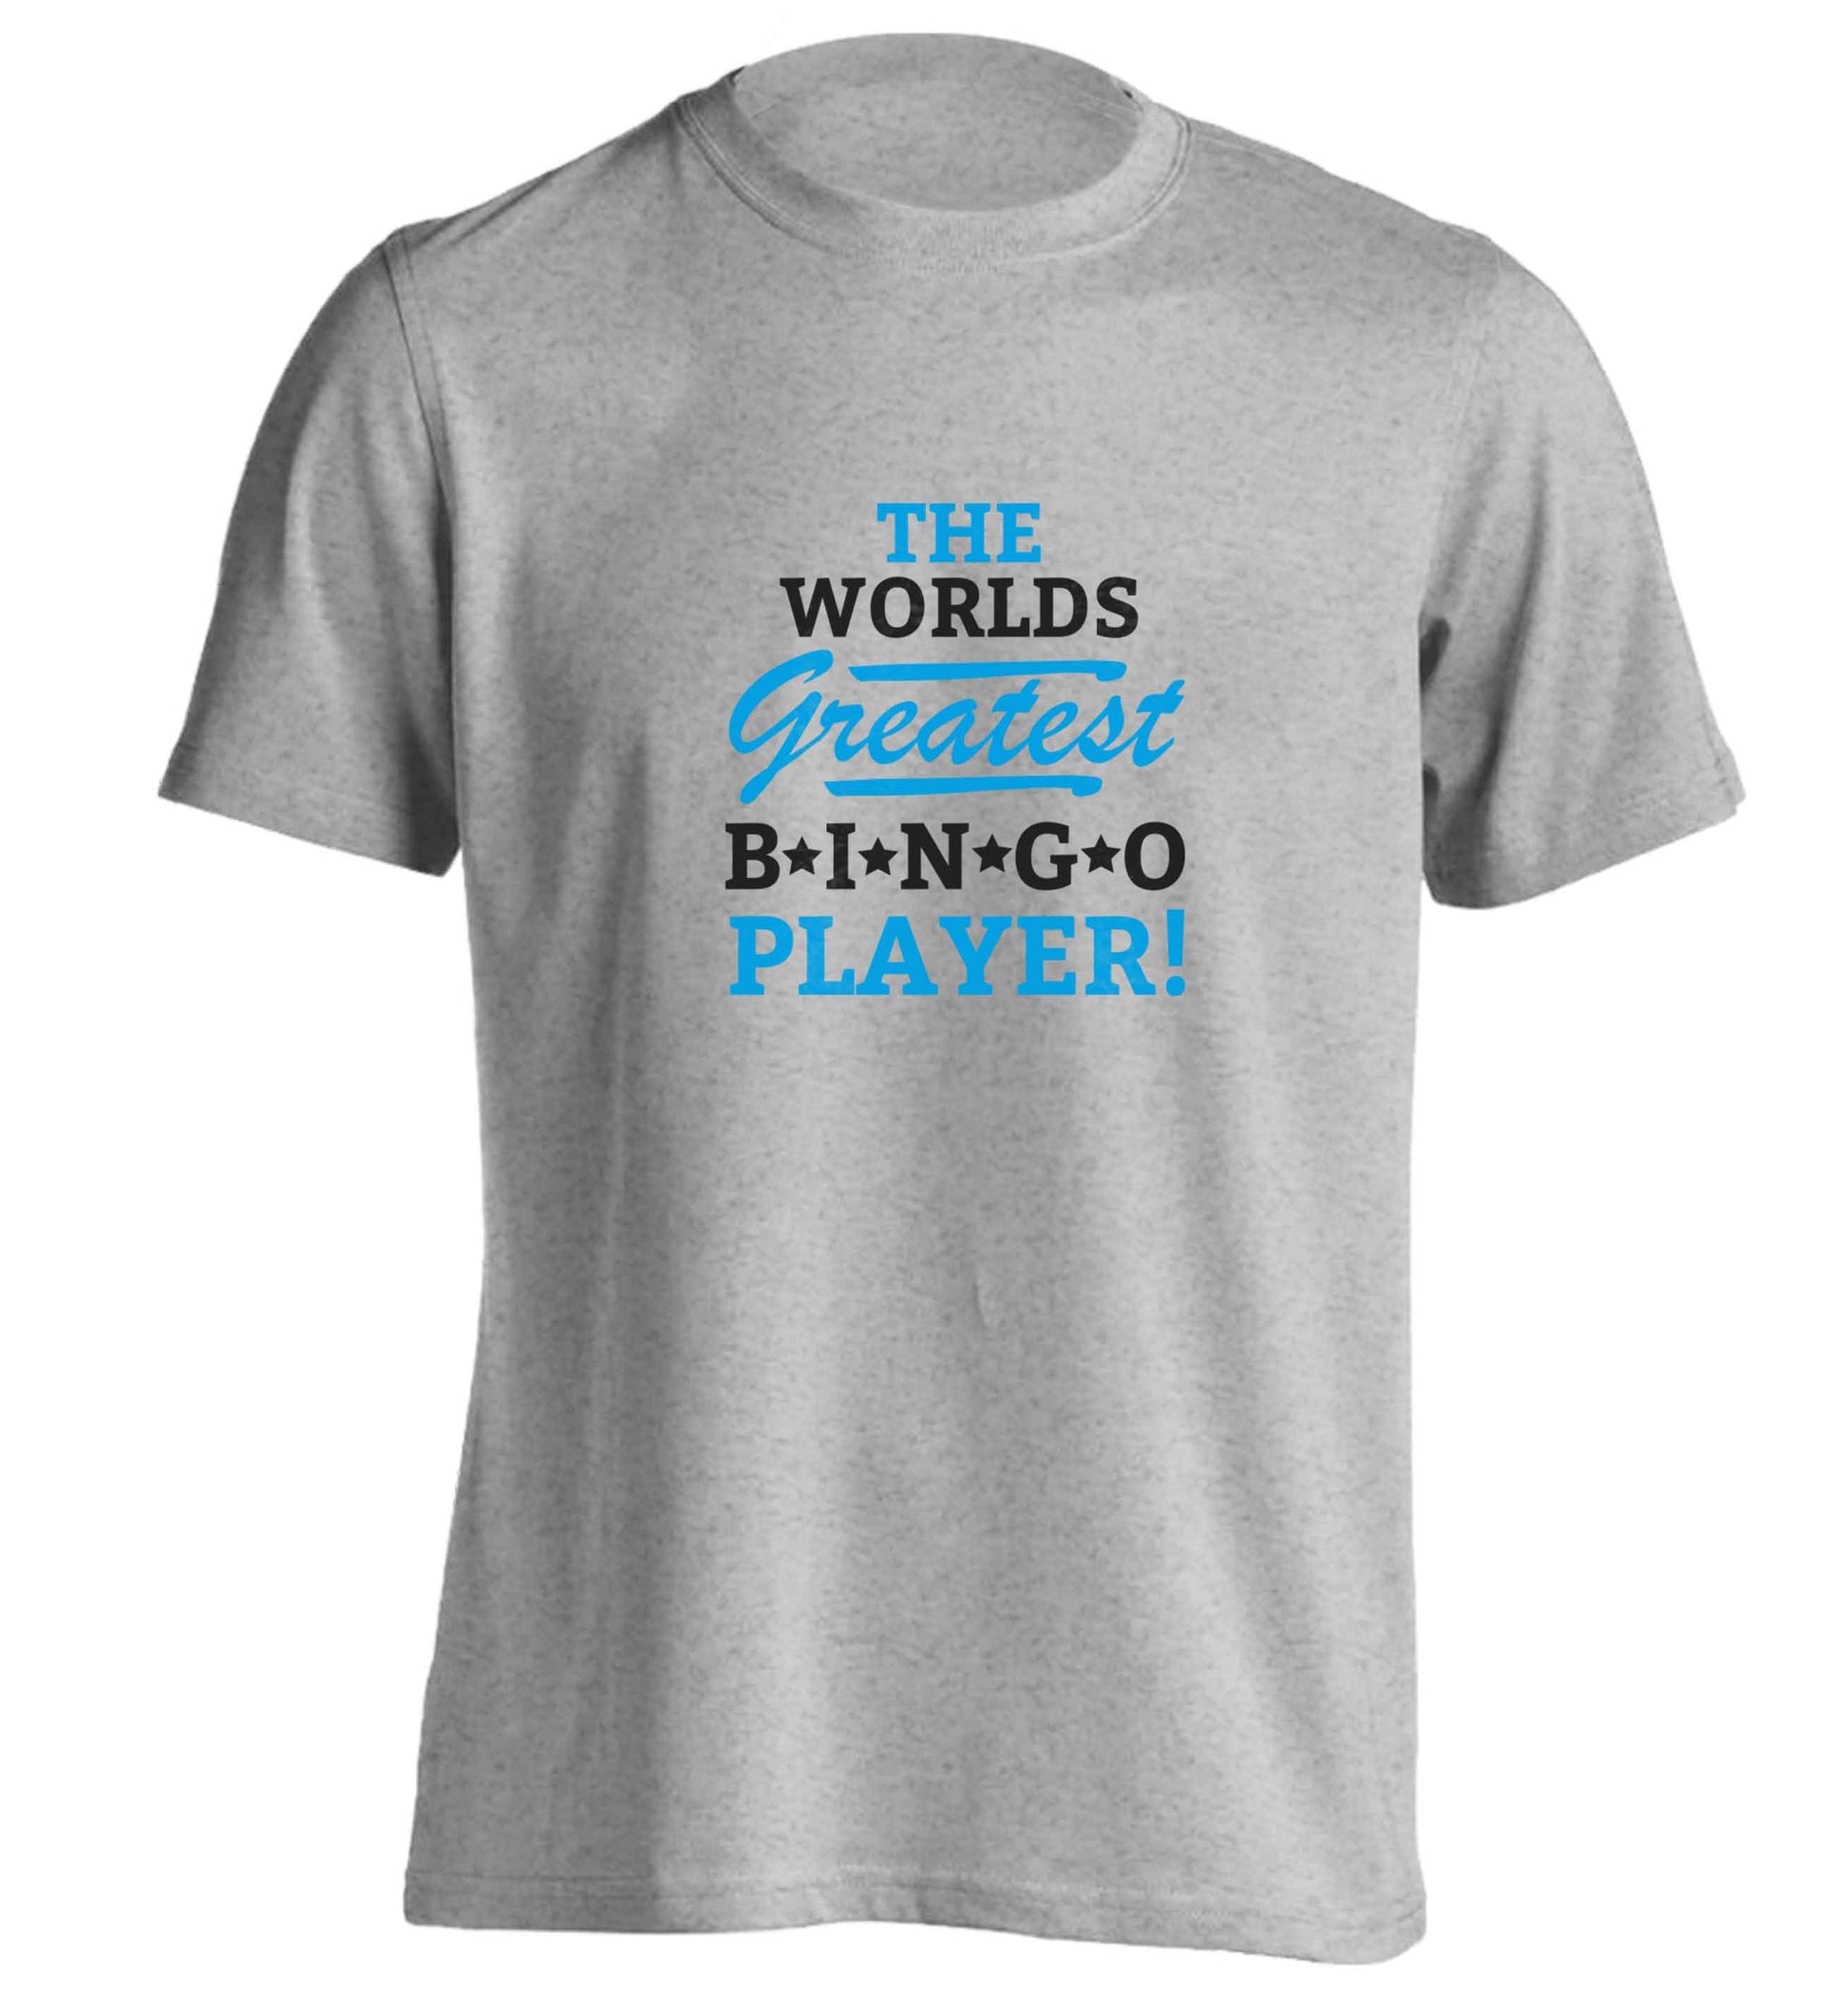 Worlds greatest bingo player adults unisex grey Tshirt 2XL